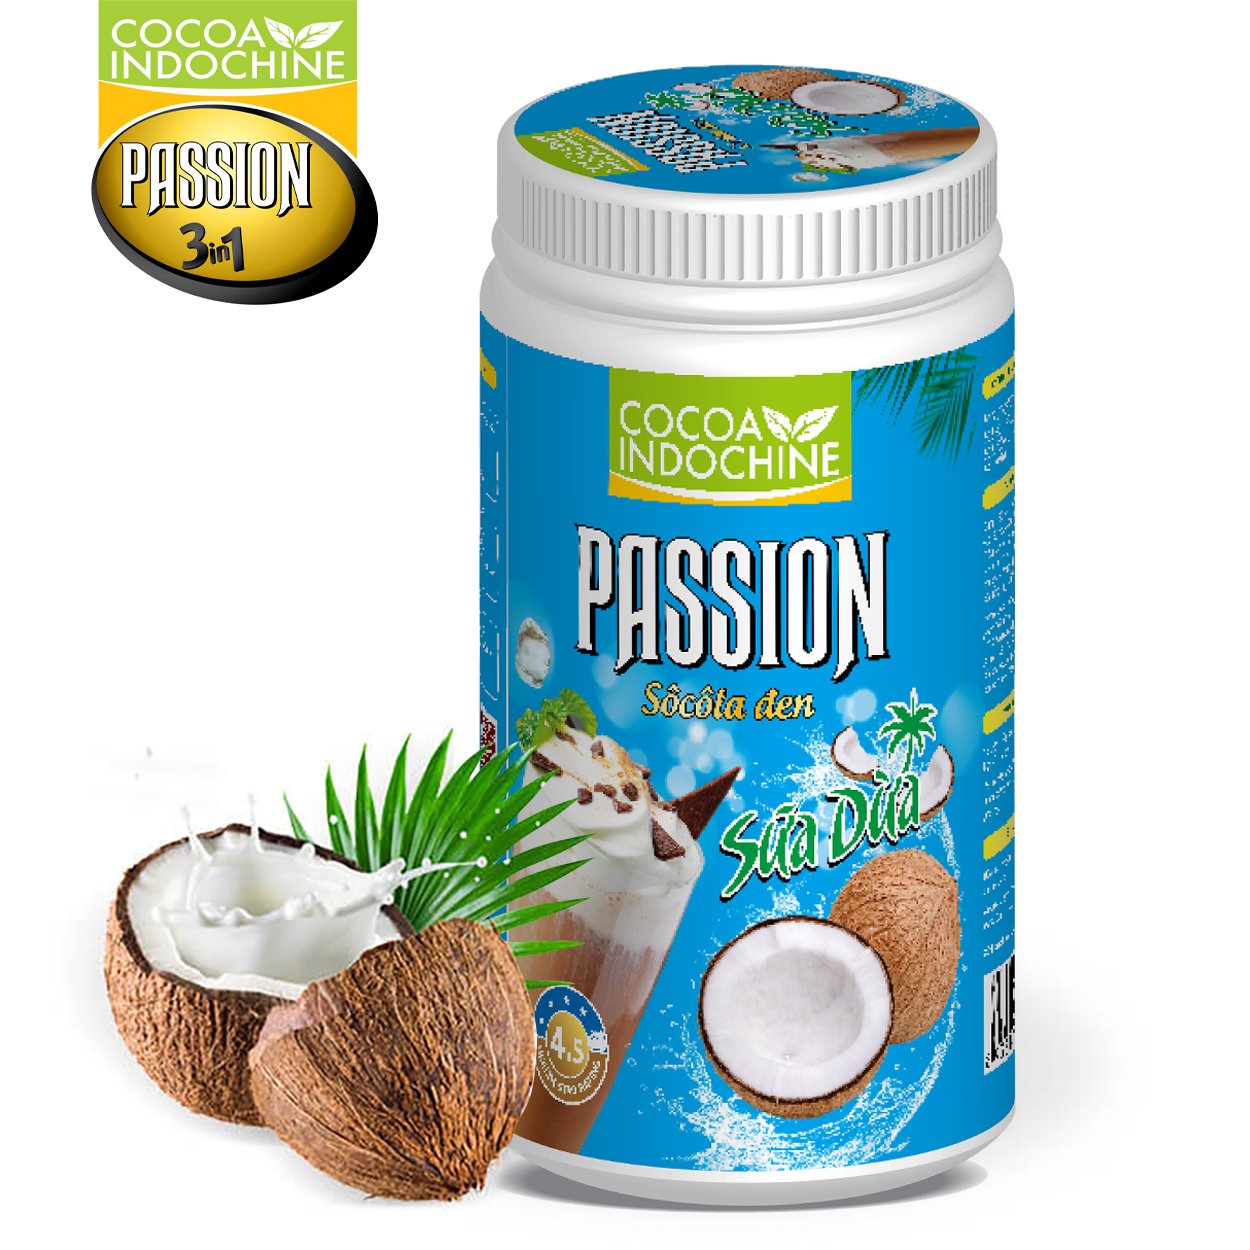 Bột ca cao sữa dừa Passion - Chuyên pha chế trà sữa, milo dầm, thức uống sô cô la cacao thơm ngon tiện lợi - Hũ 750g